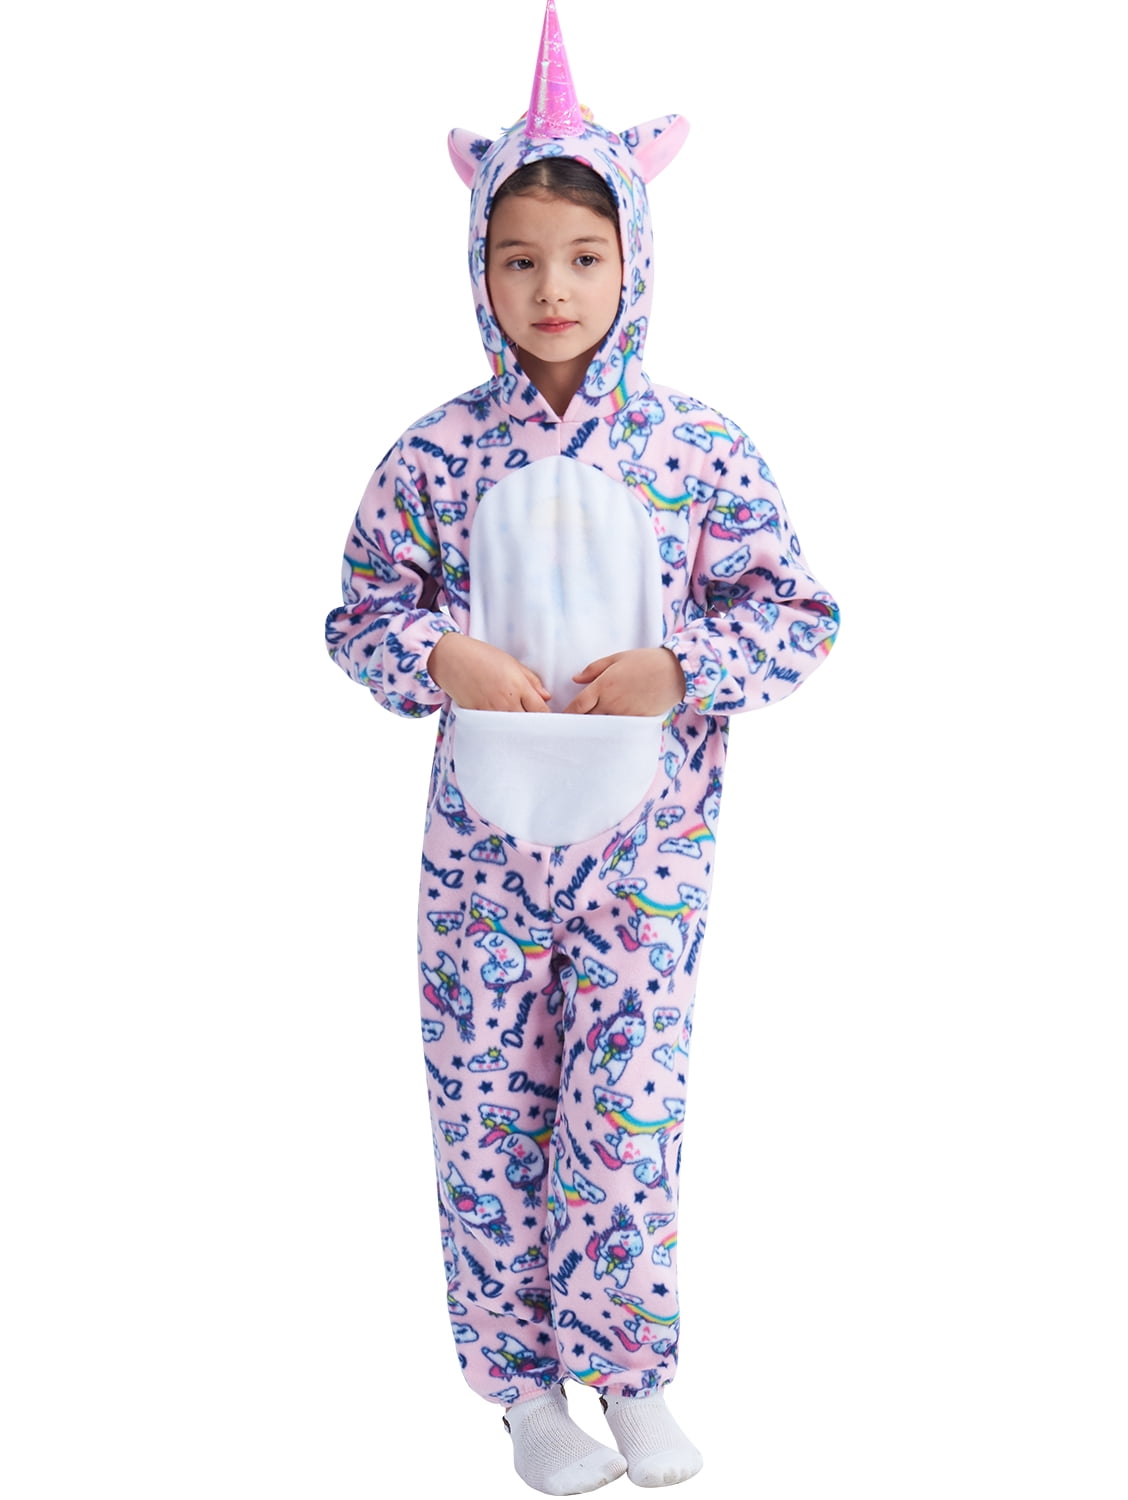 NWT JUSTICE Girl Hooded Unicorn One Piece Union Suit Pajamas PJ Sz 8 10 14 20 